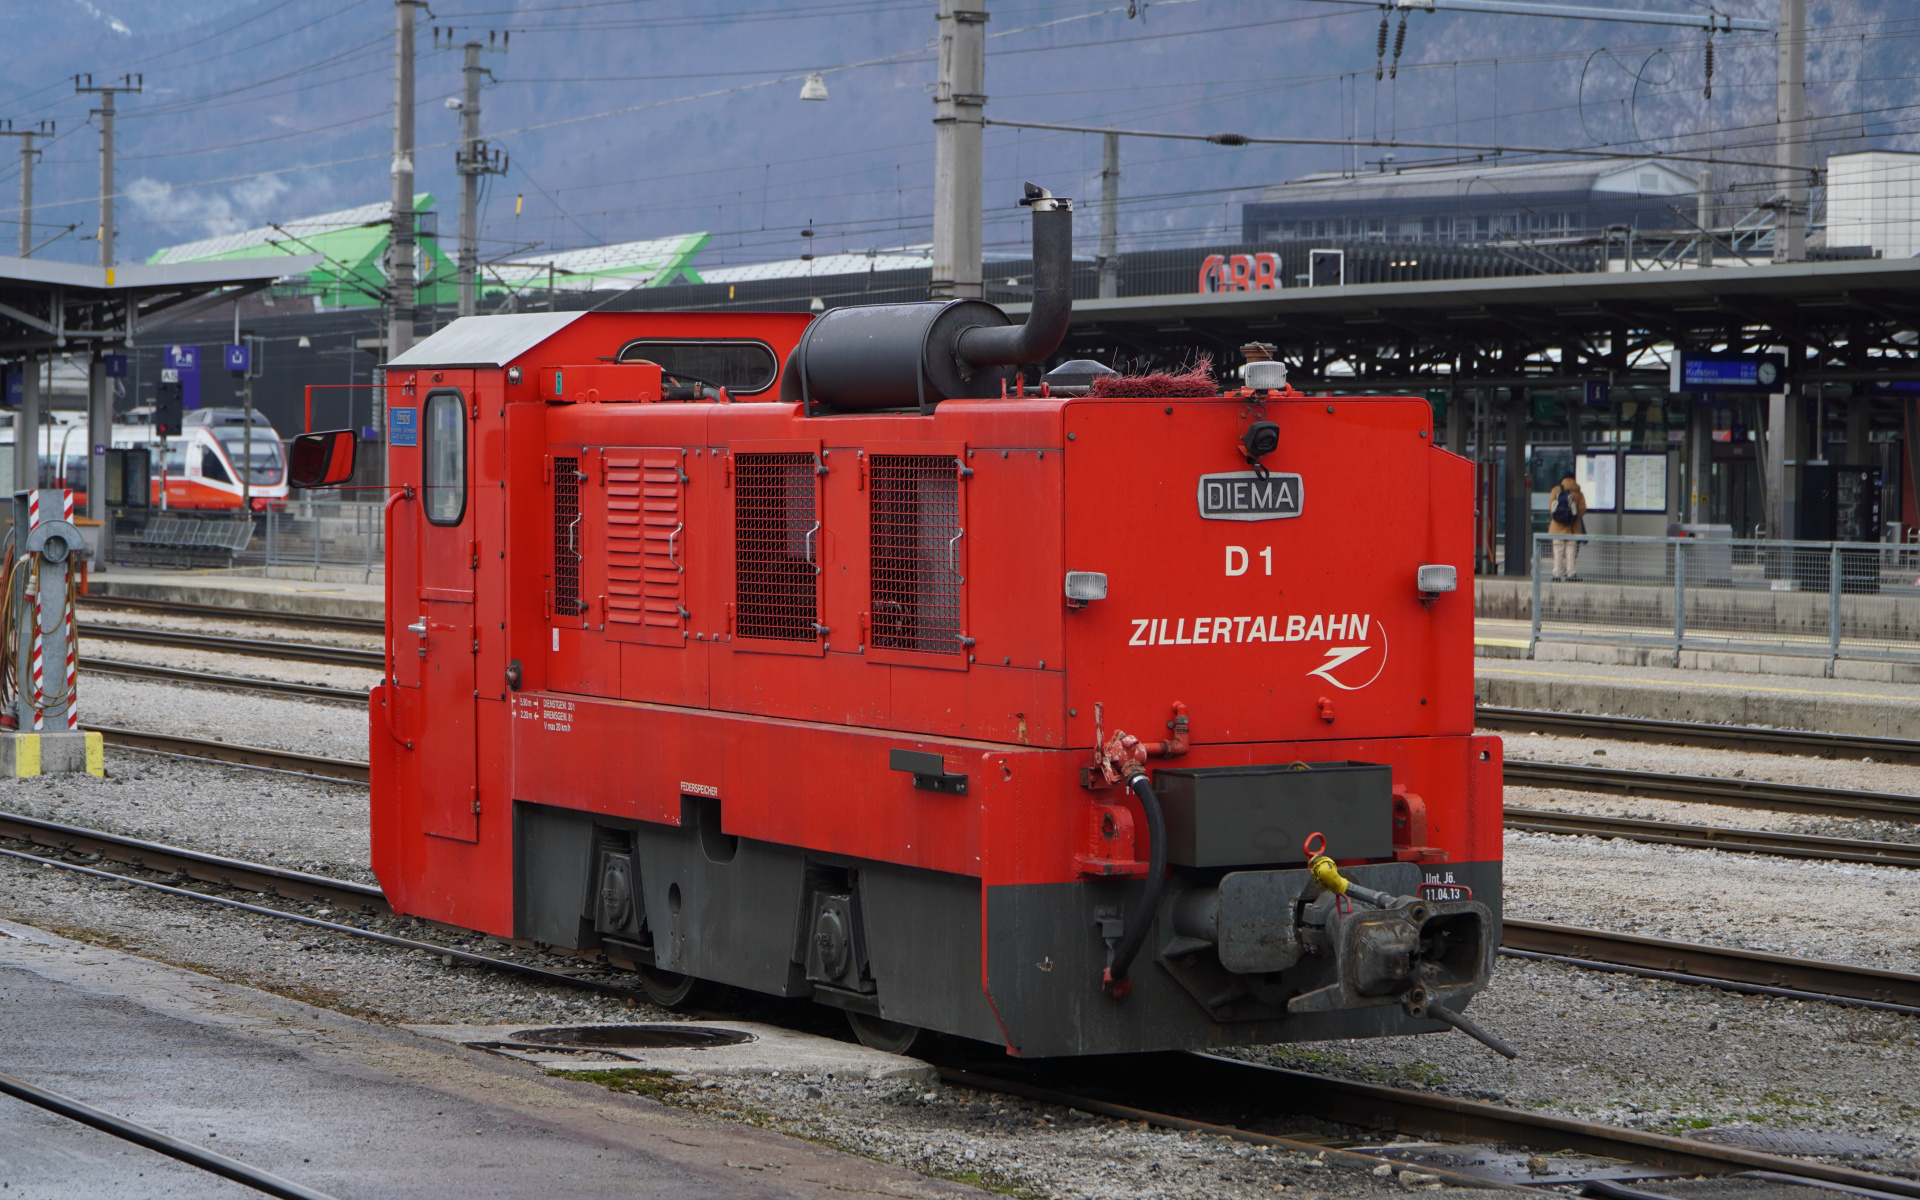 Zillertalbahn DIEMA D1